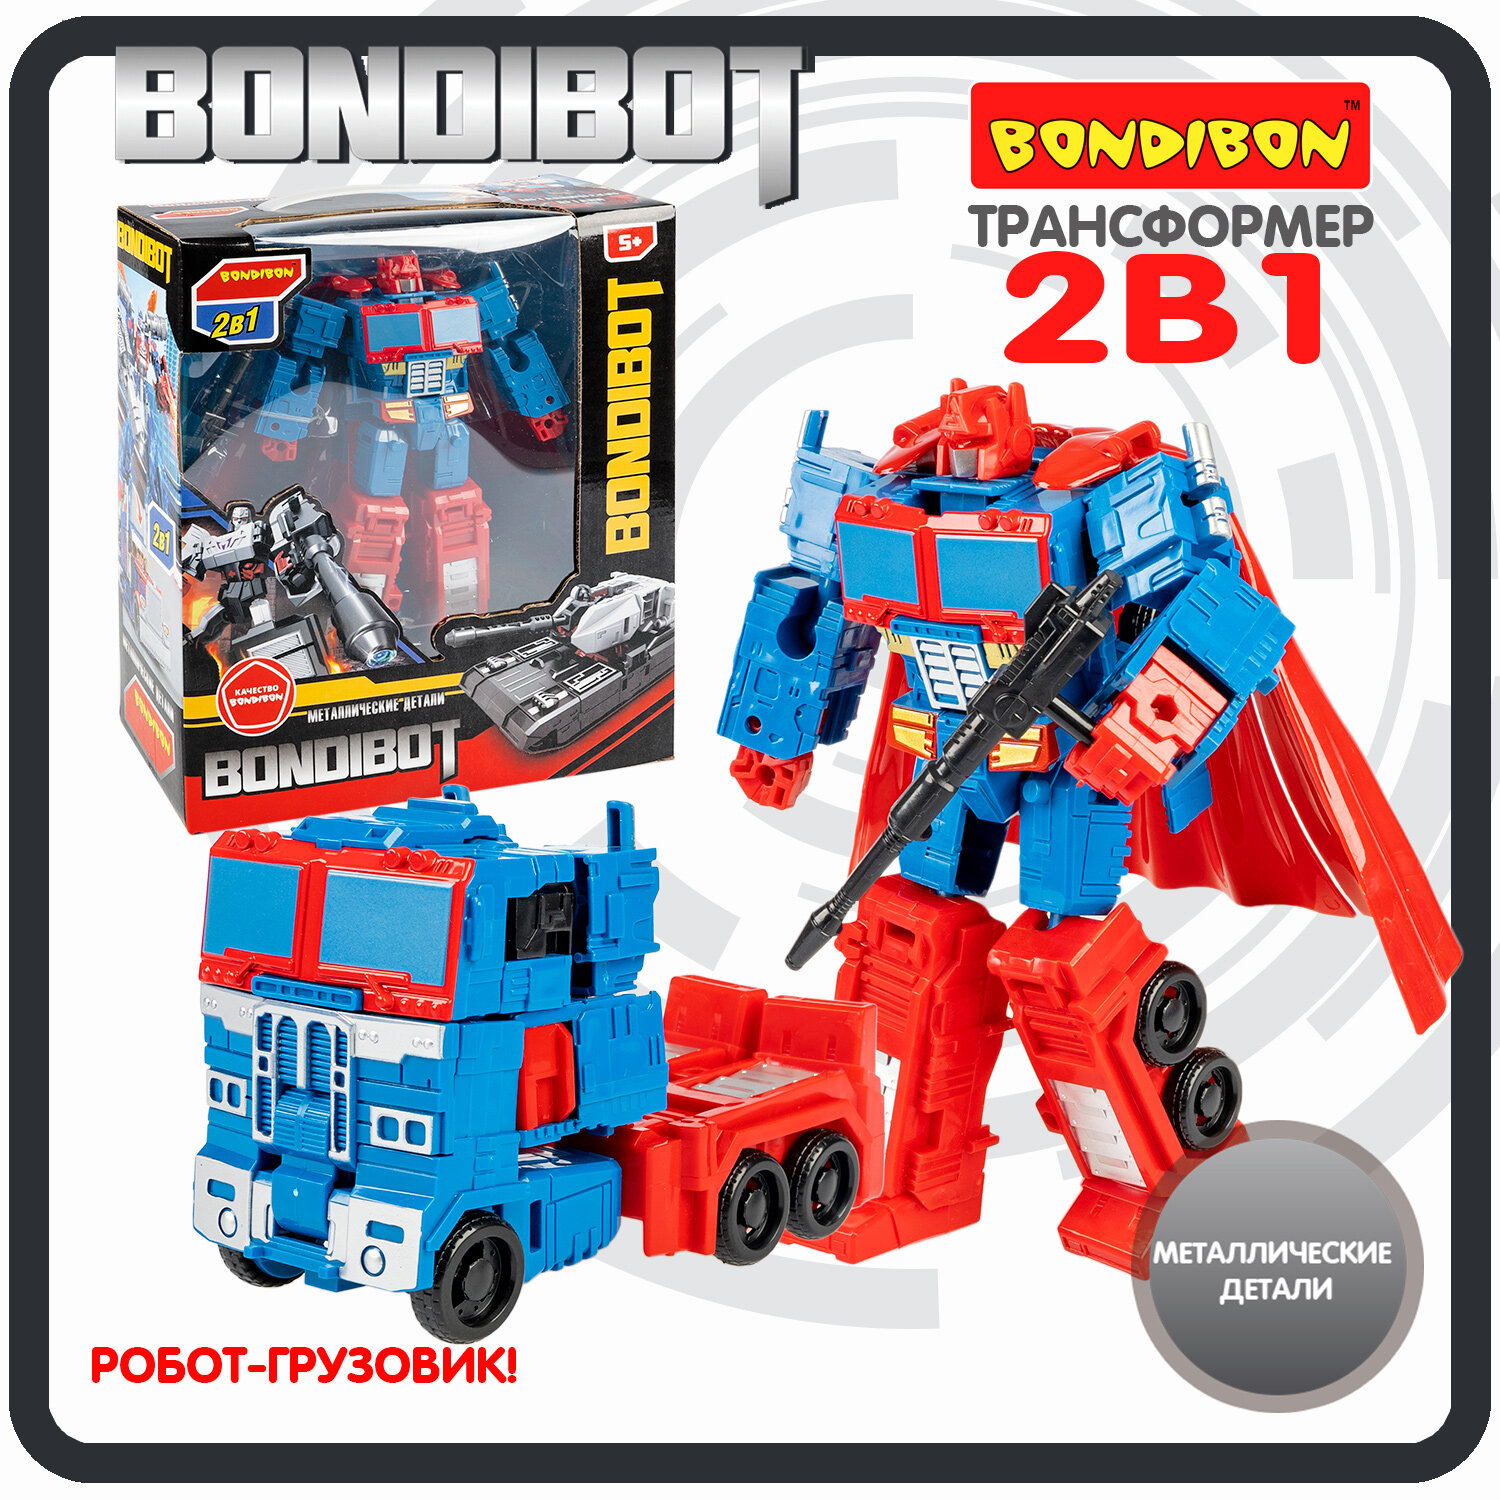 Робот трансформер грузовик 2в1 BONDIBOT Bondibon фигурка детская машинка игрушка для мальчиков на подарок, металлические детали